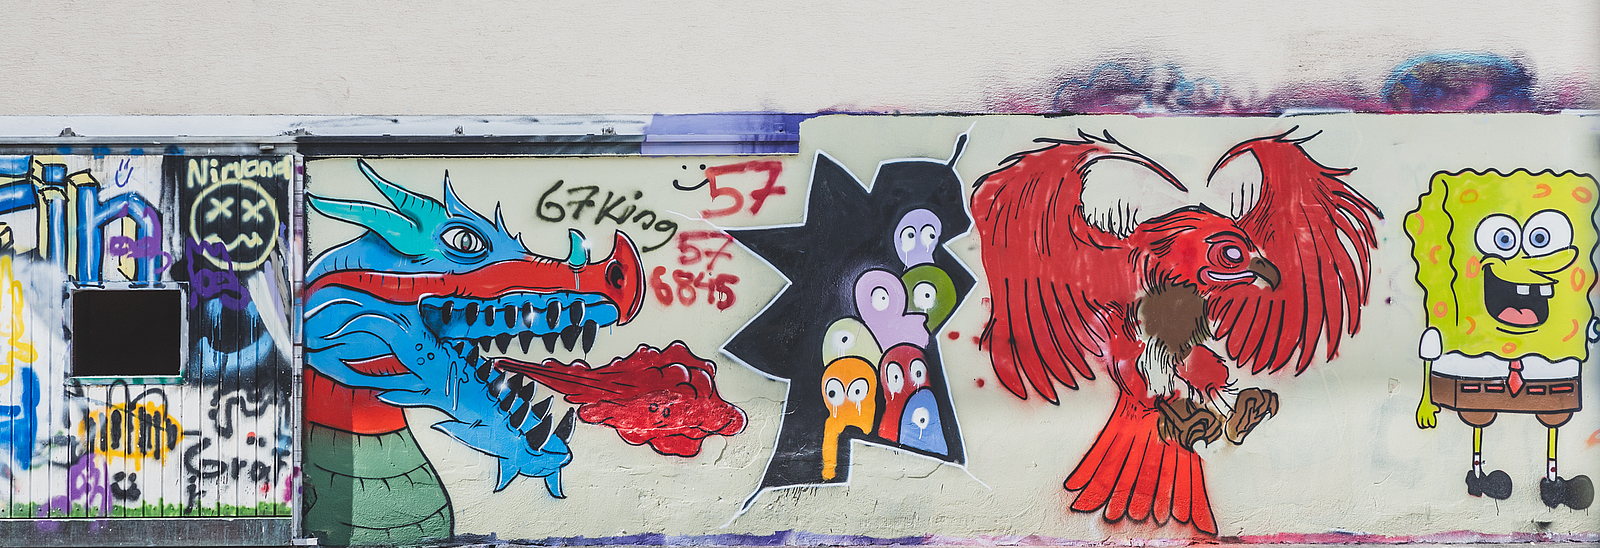 Eine Wand, die mit Graffitis besprüht ist.